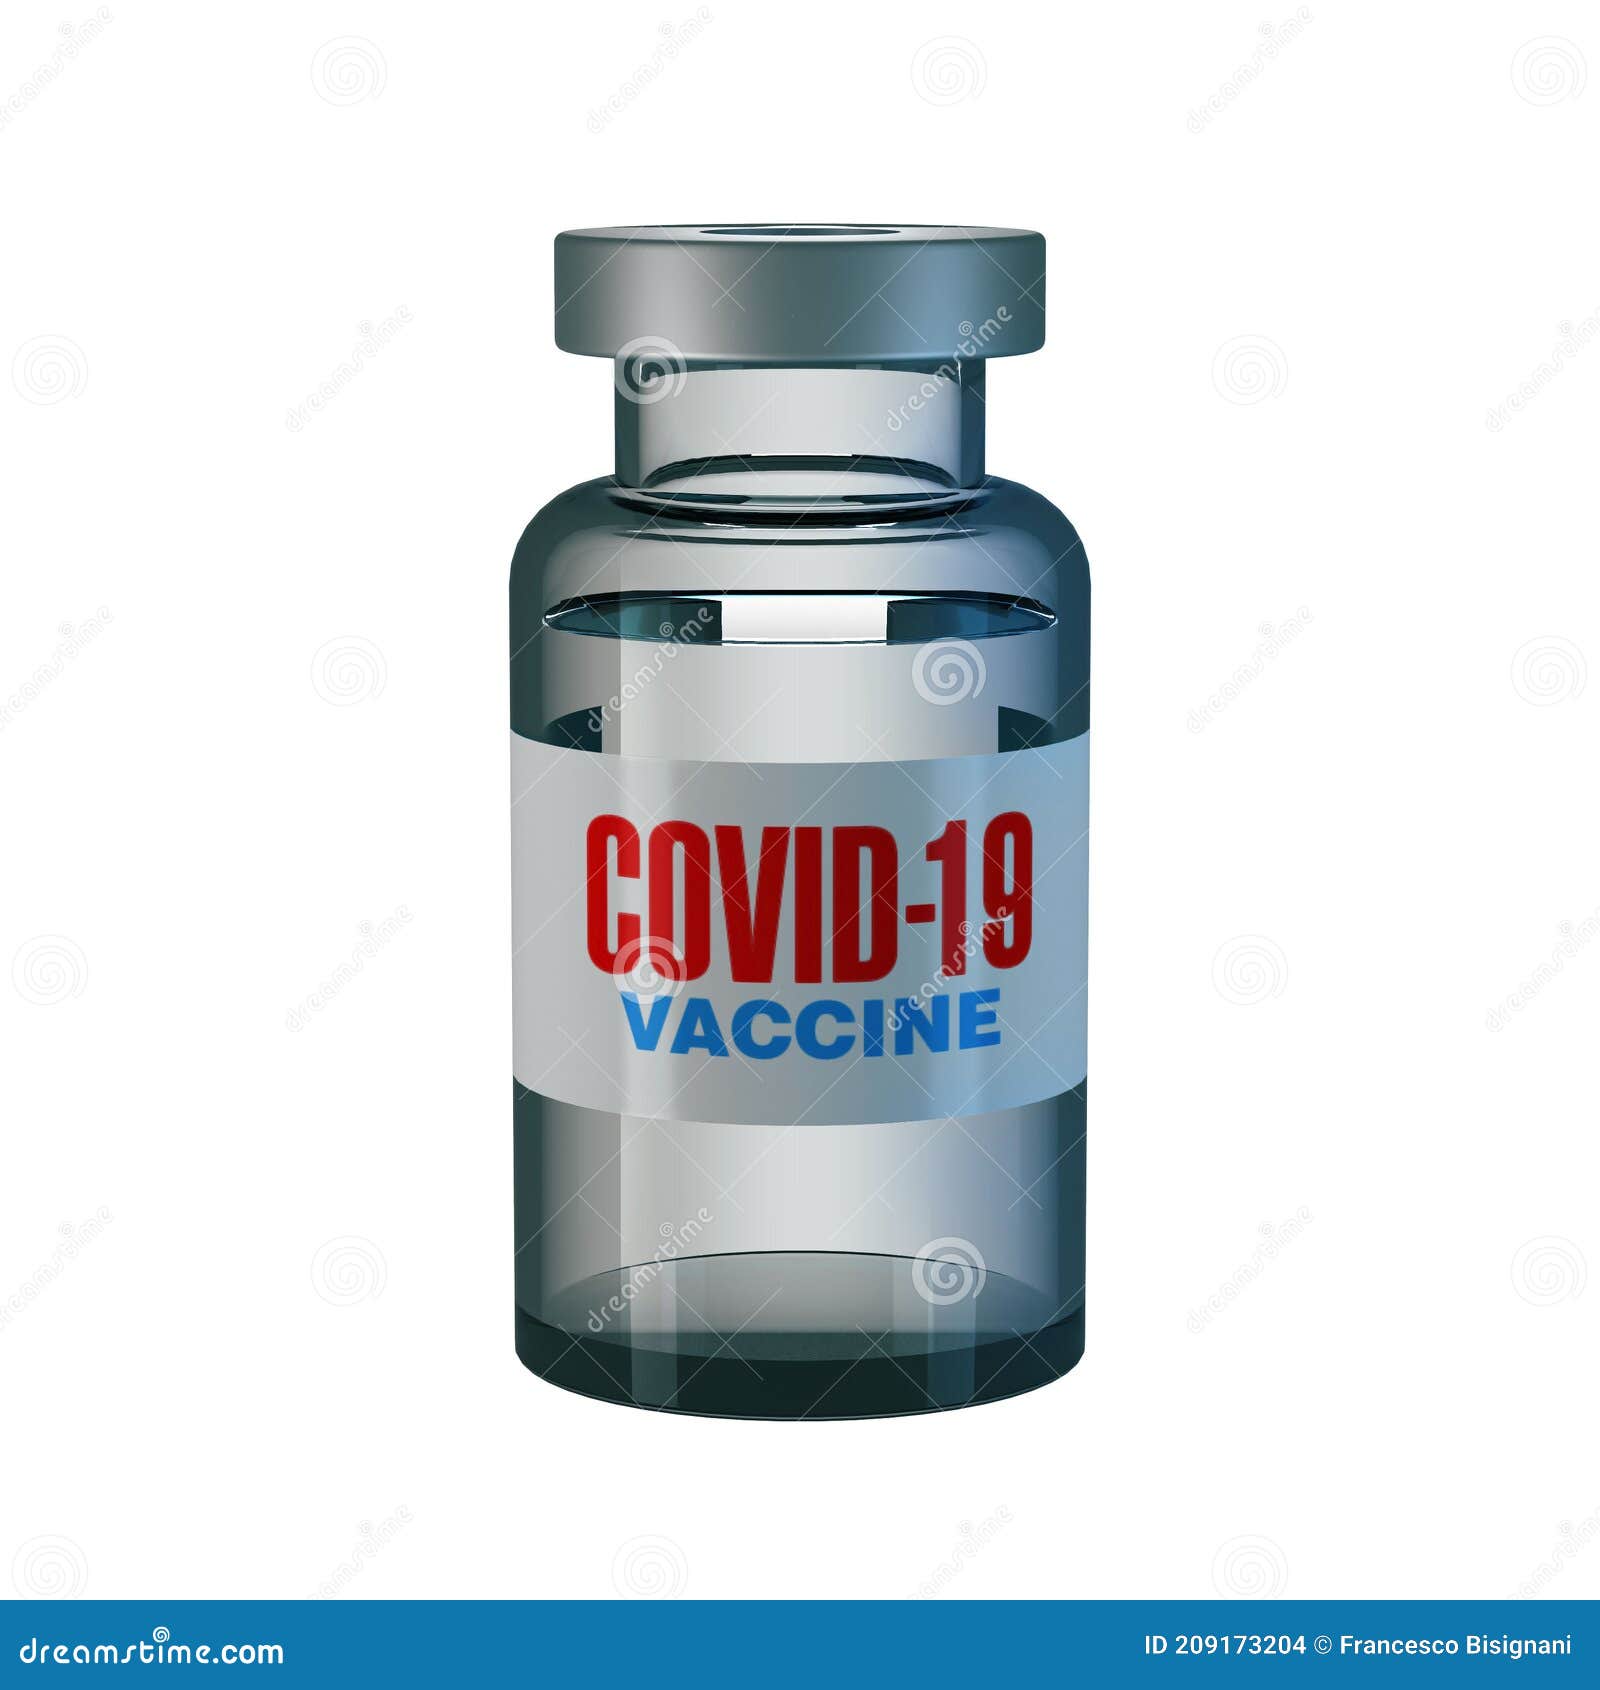 coronavirus covid-19 vaccine vial  on white background